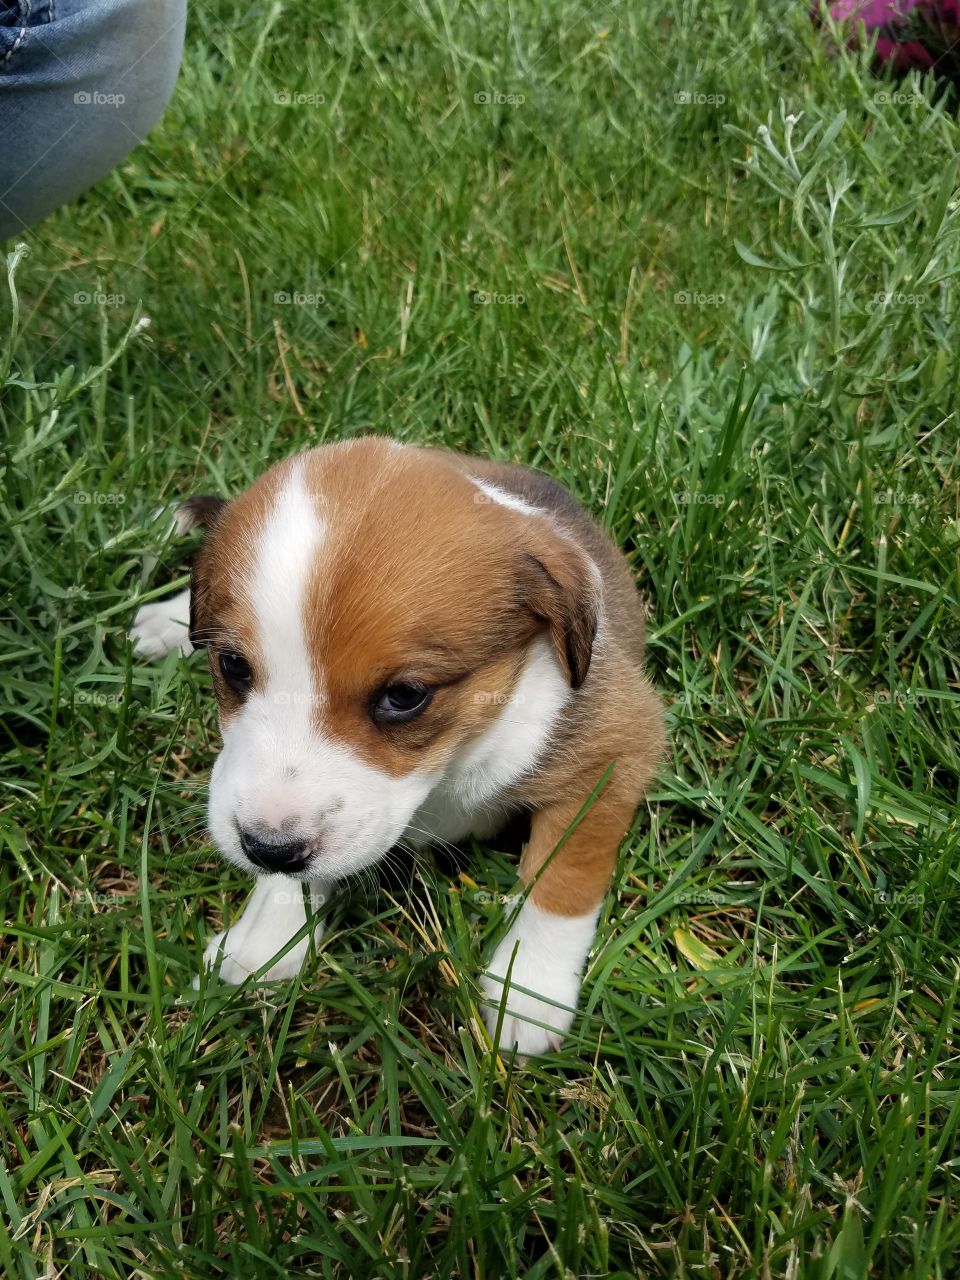 puppy, cute, love, grass, yard, farm